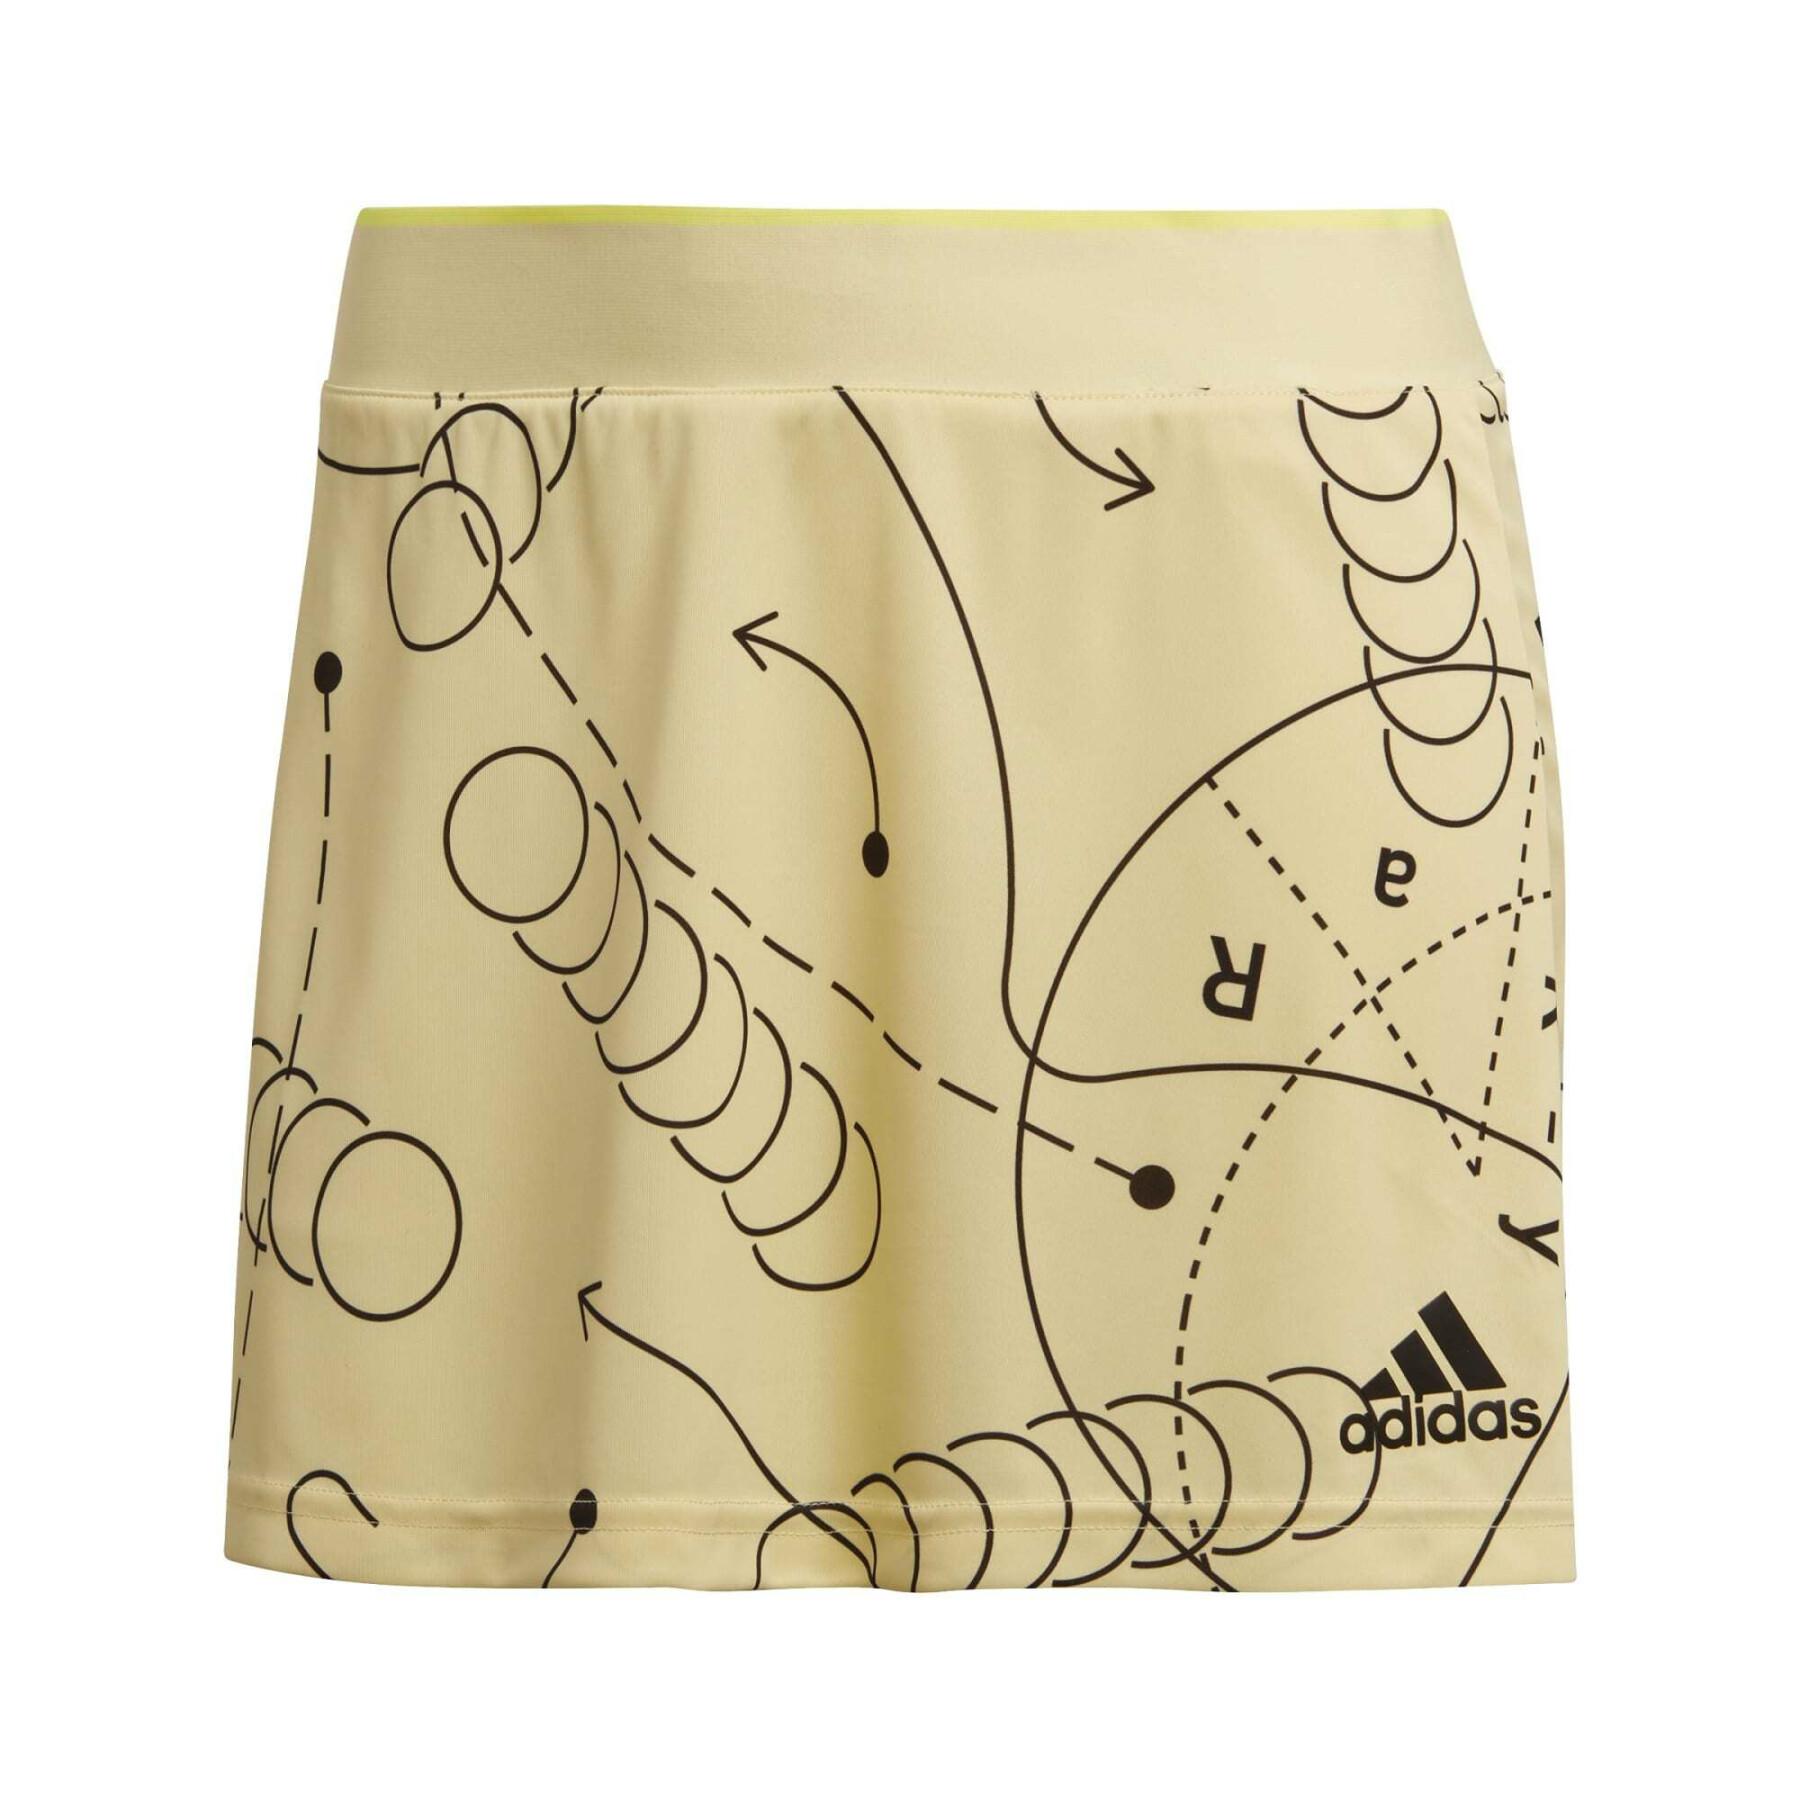 Damska graficzna spódnica klubowa do tenisa adidas